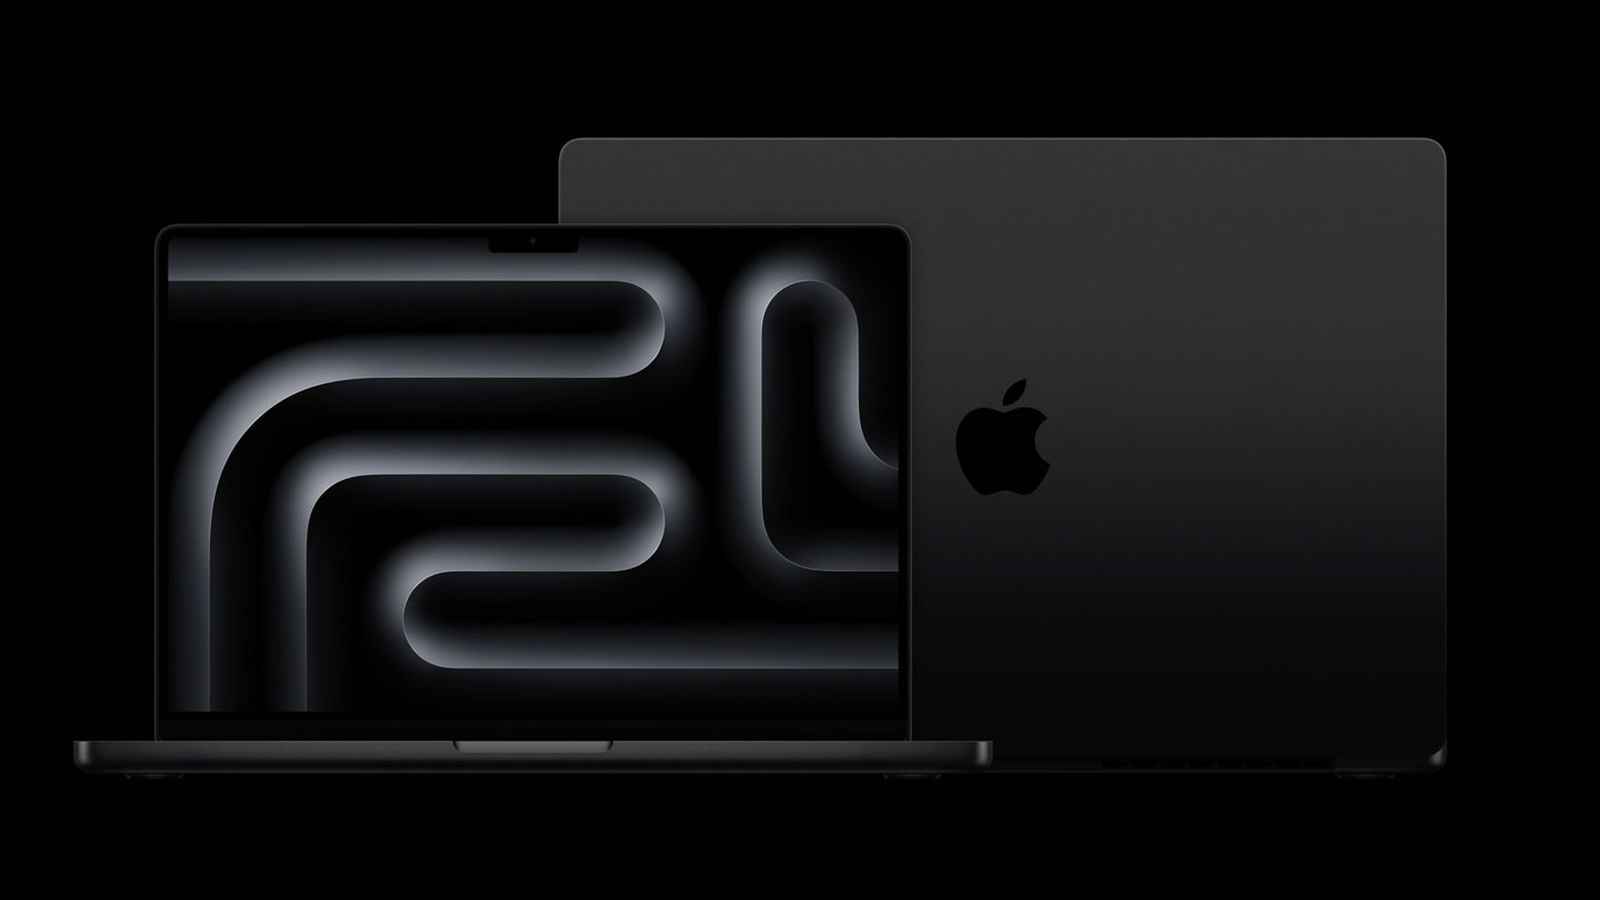 Um MacBook Pro preto espacial com selo anti-impressão digital foi revelado nos primeiros vídeos práticos